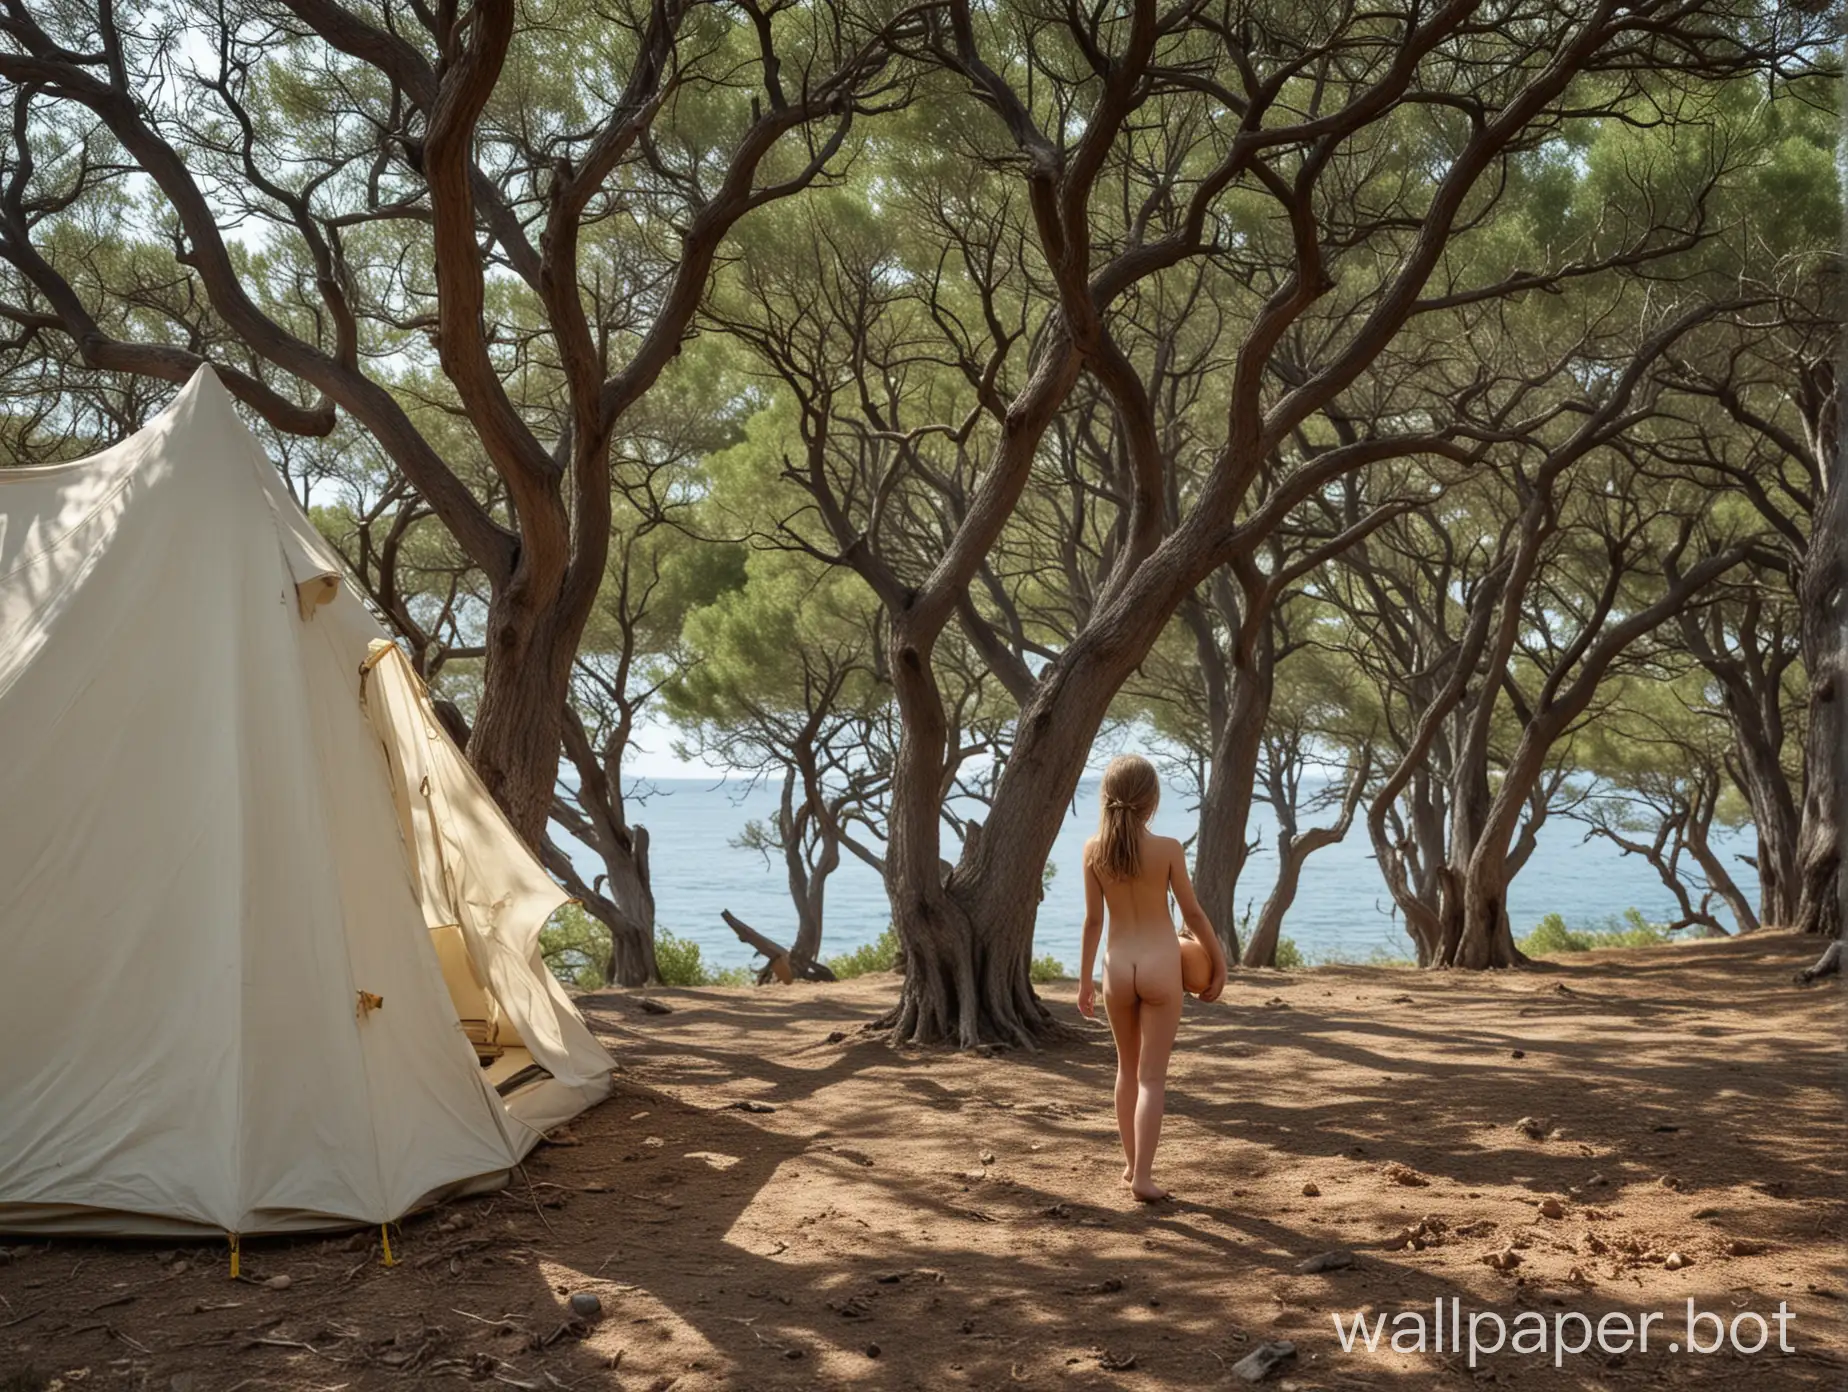 Крым, море, дубы, можжевельник, голая девочка 10 лет, в полный рост, палатка, вдалеке вид на море, вид сзади